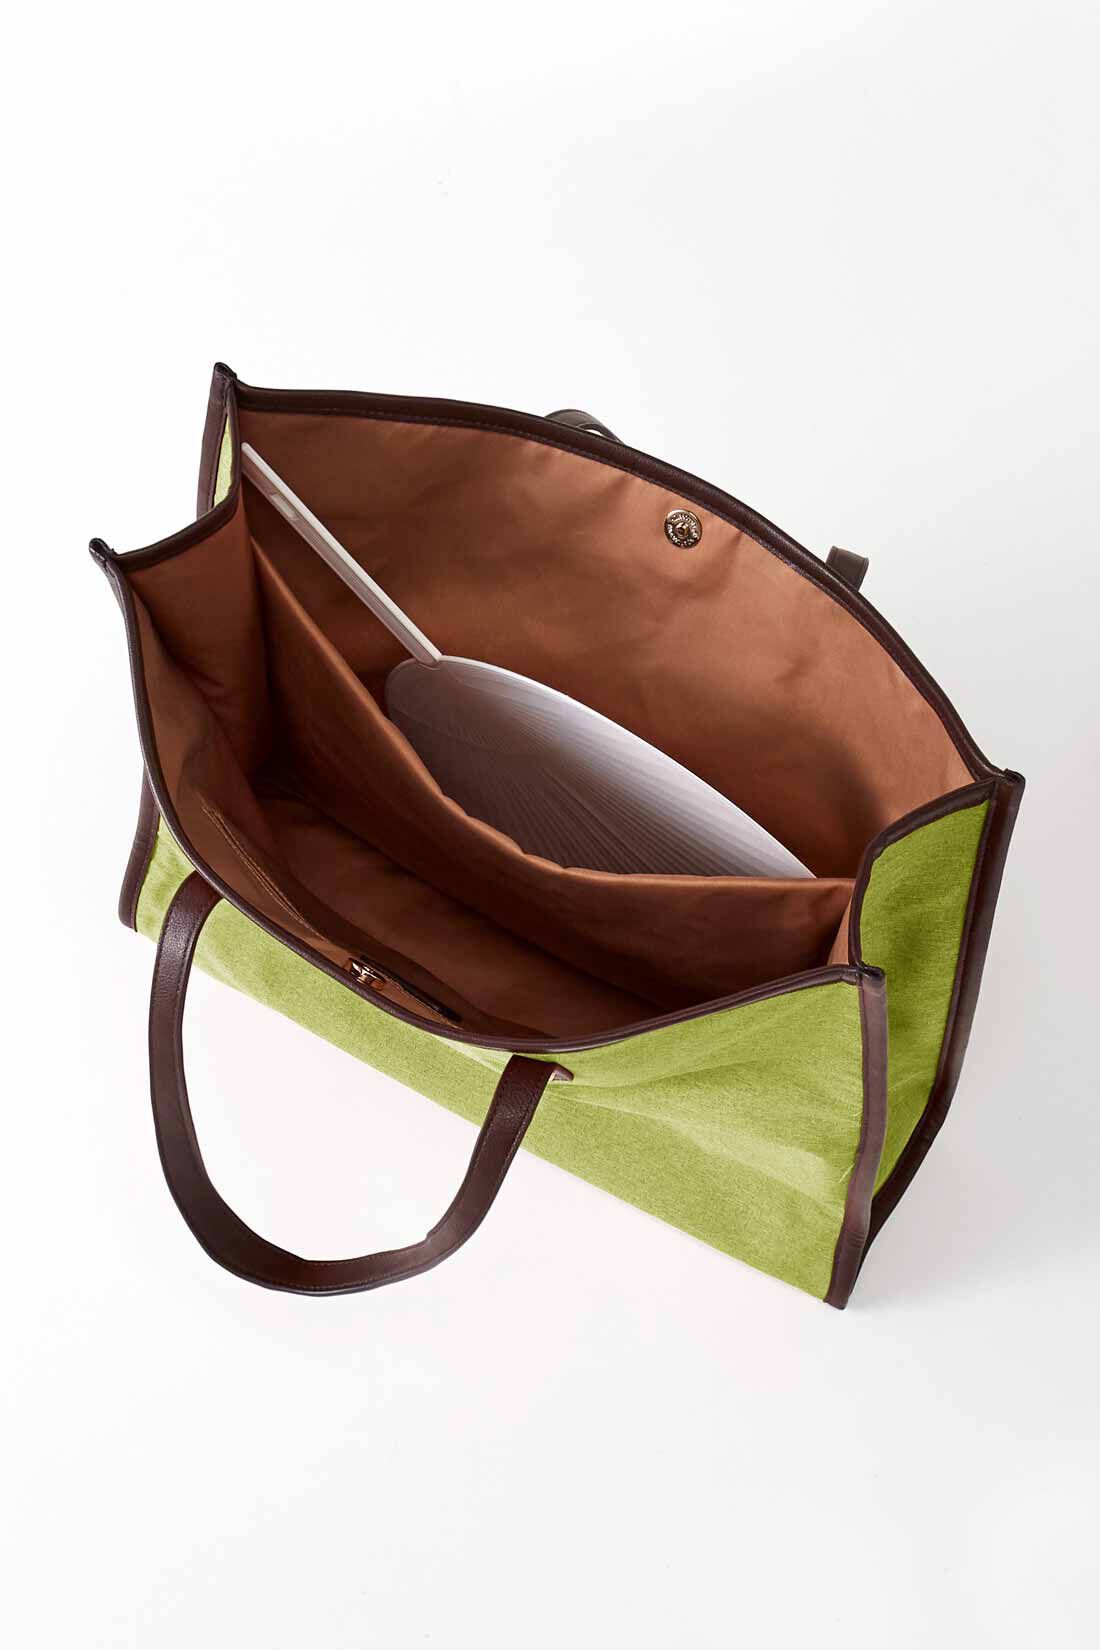 Real Stock|OSYAIRO ジャンボうちわが入るパイピングトートバッグ〈グリーン〉|ジャンボうちわがすっぽり入る、クッション材の入った大きな内ポケット付き。